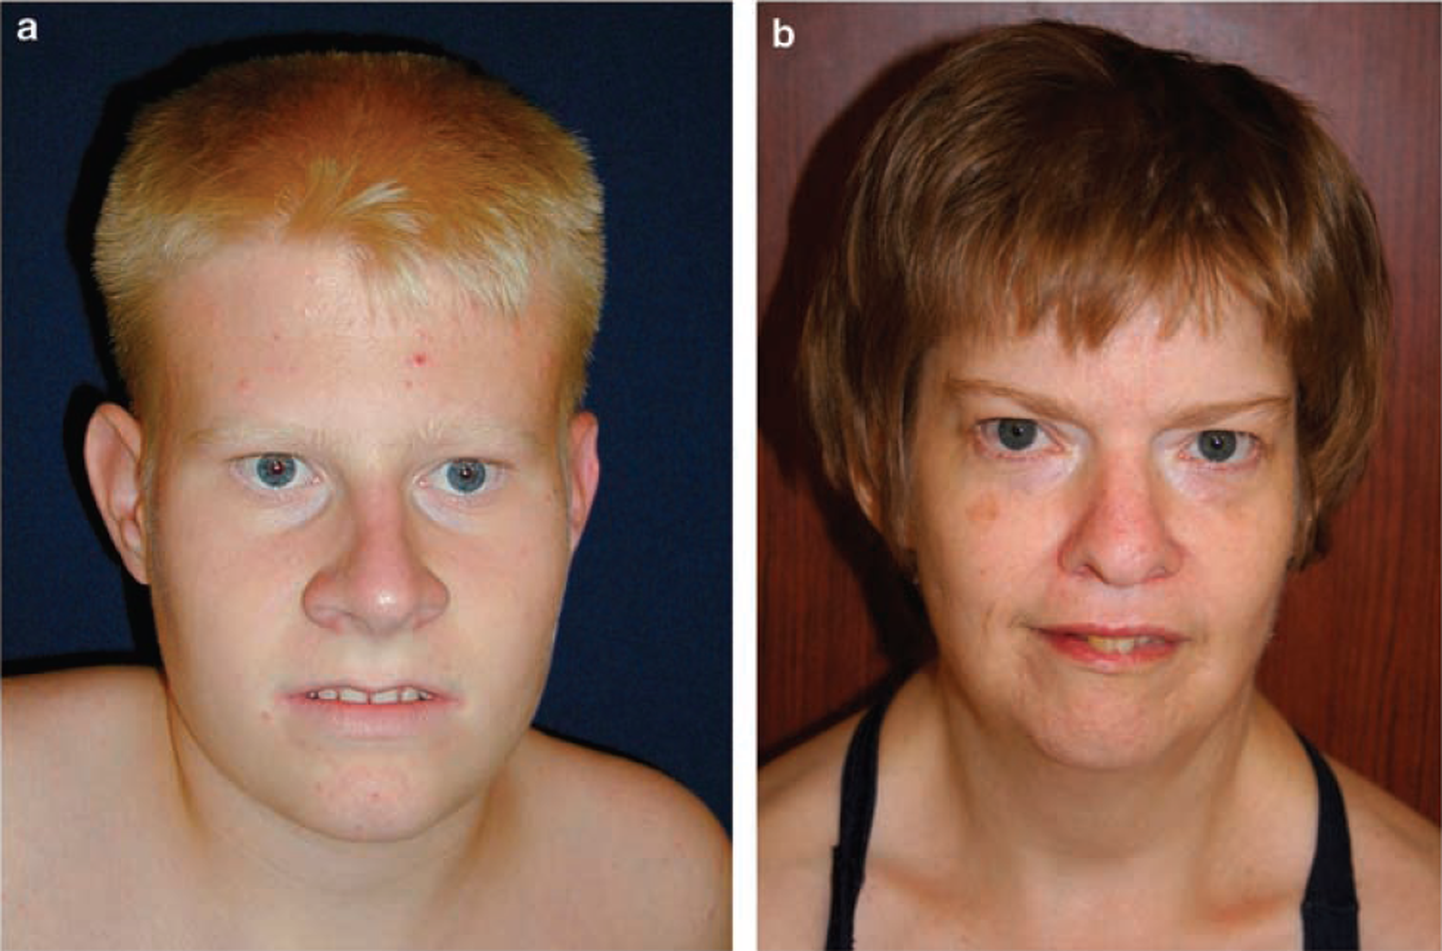 Prader-Willi sündroom väljendub ka iseloomulikes näojoontes.